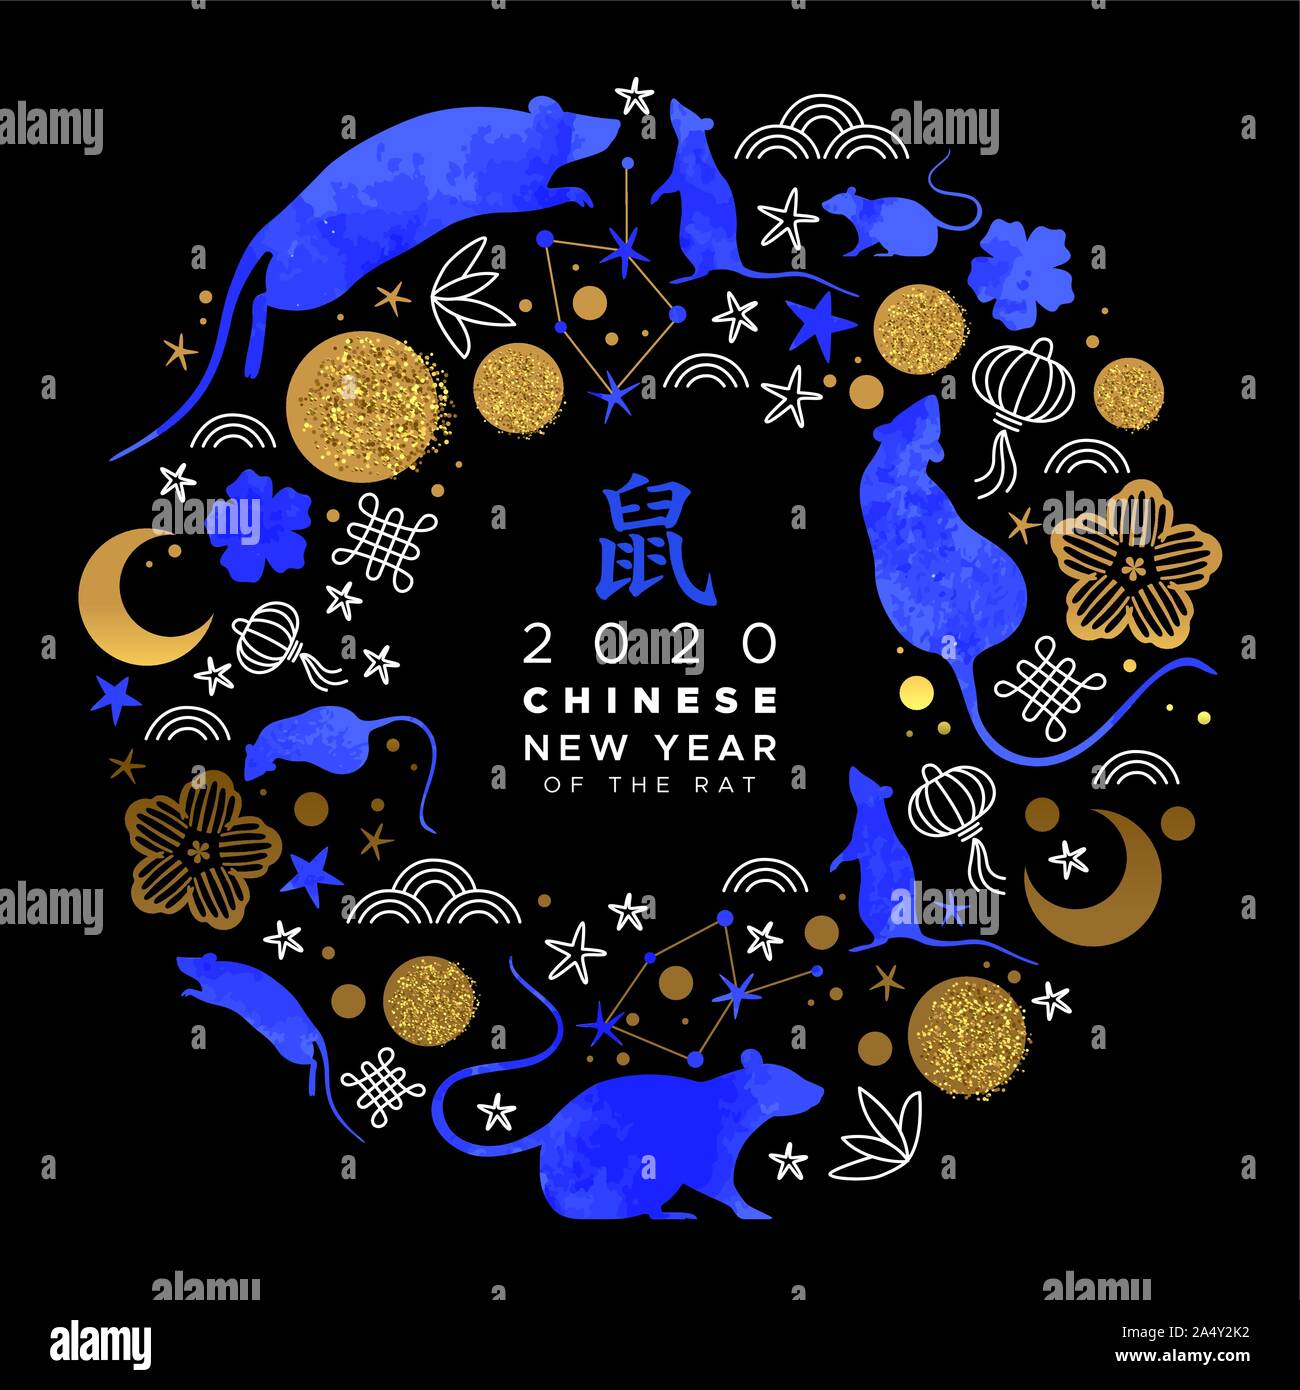 Chinesisches Neujahr 2020 Grußkarte blau Aquarell maus Tiere, Astrologie Symbole und traditionellen Gold asiatischer Hand gezeichnet Symbol Kreis Rahmen. Calli Stock Vektor